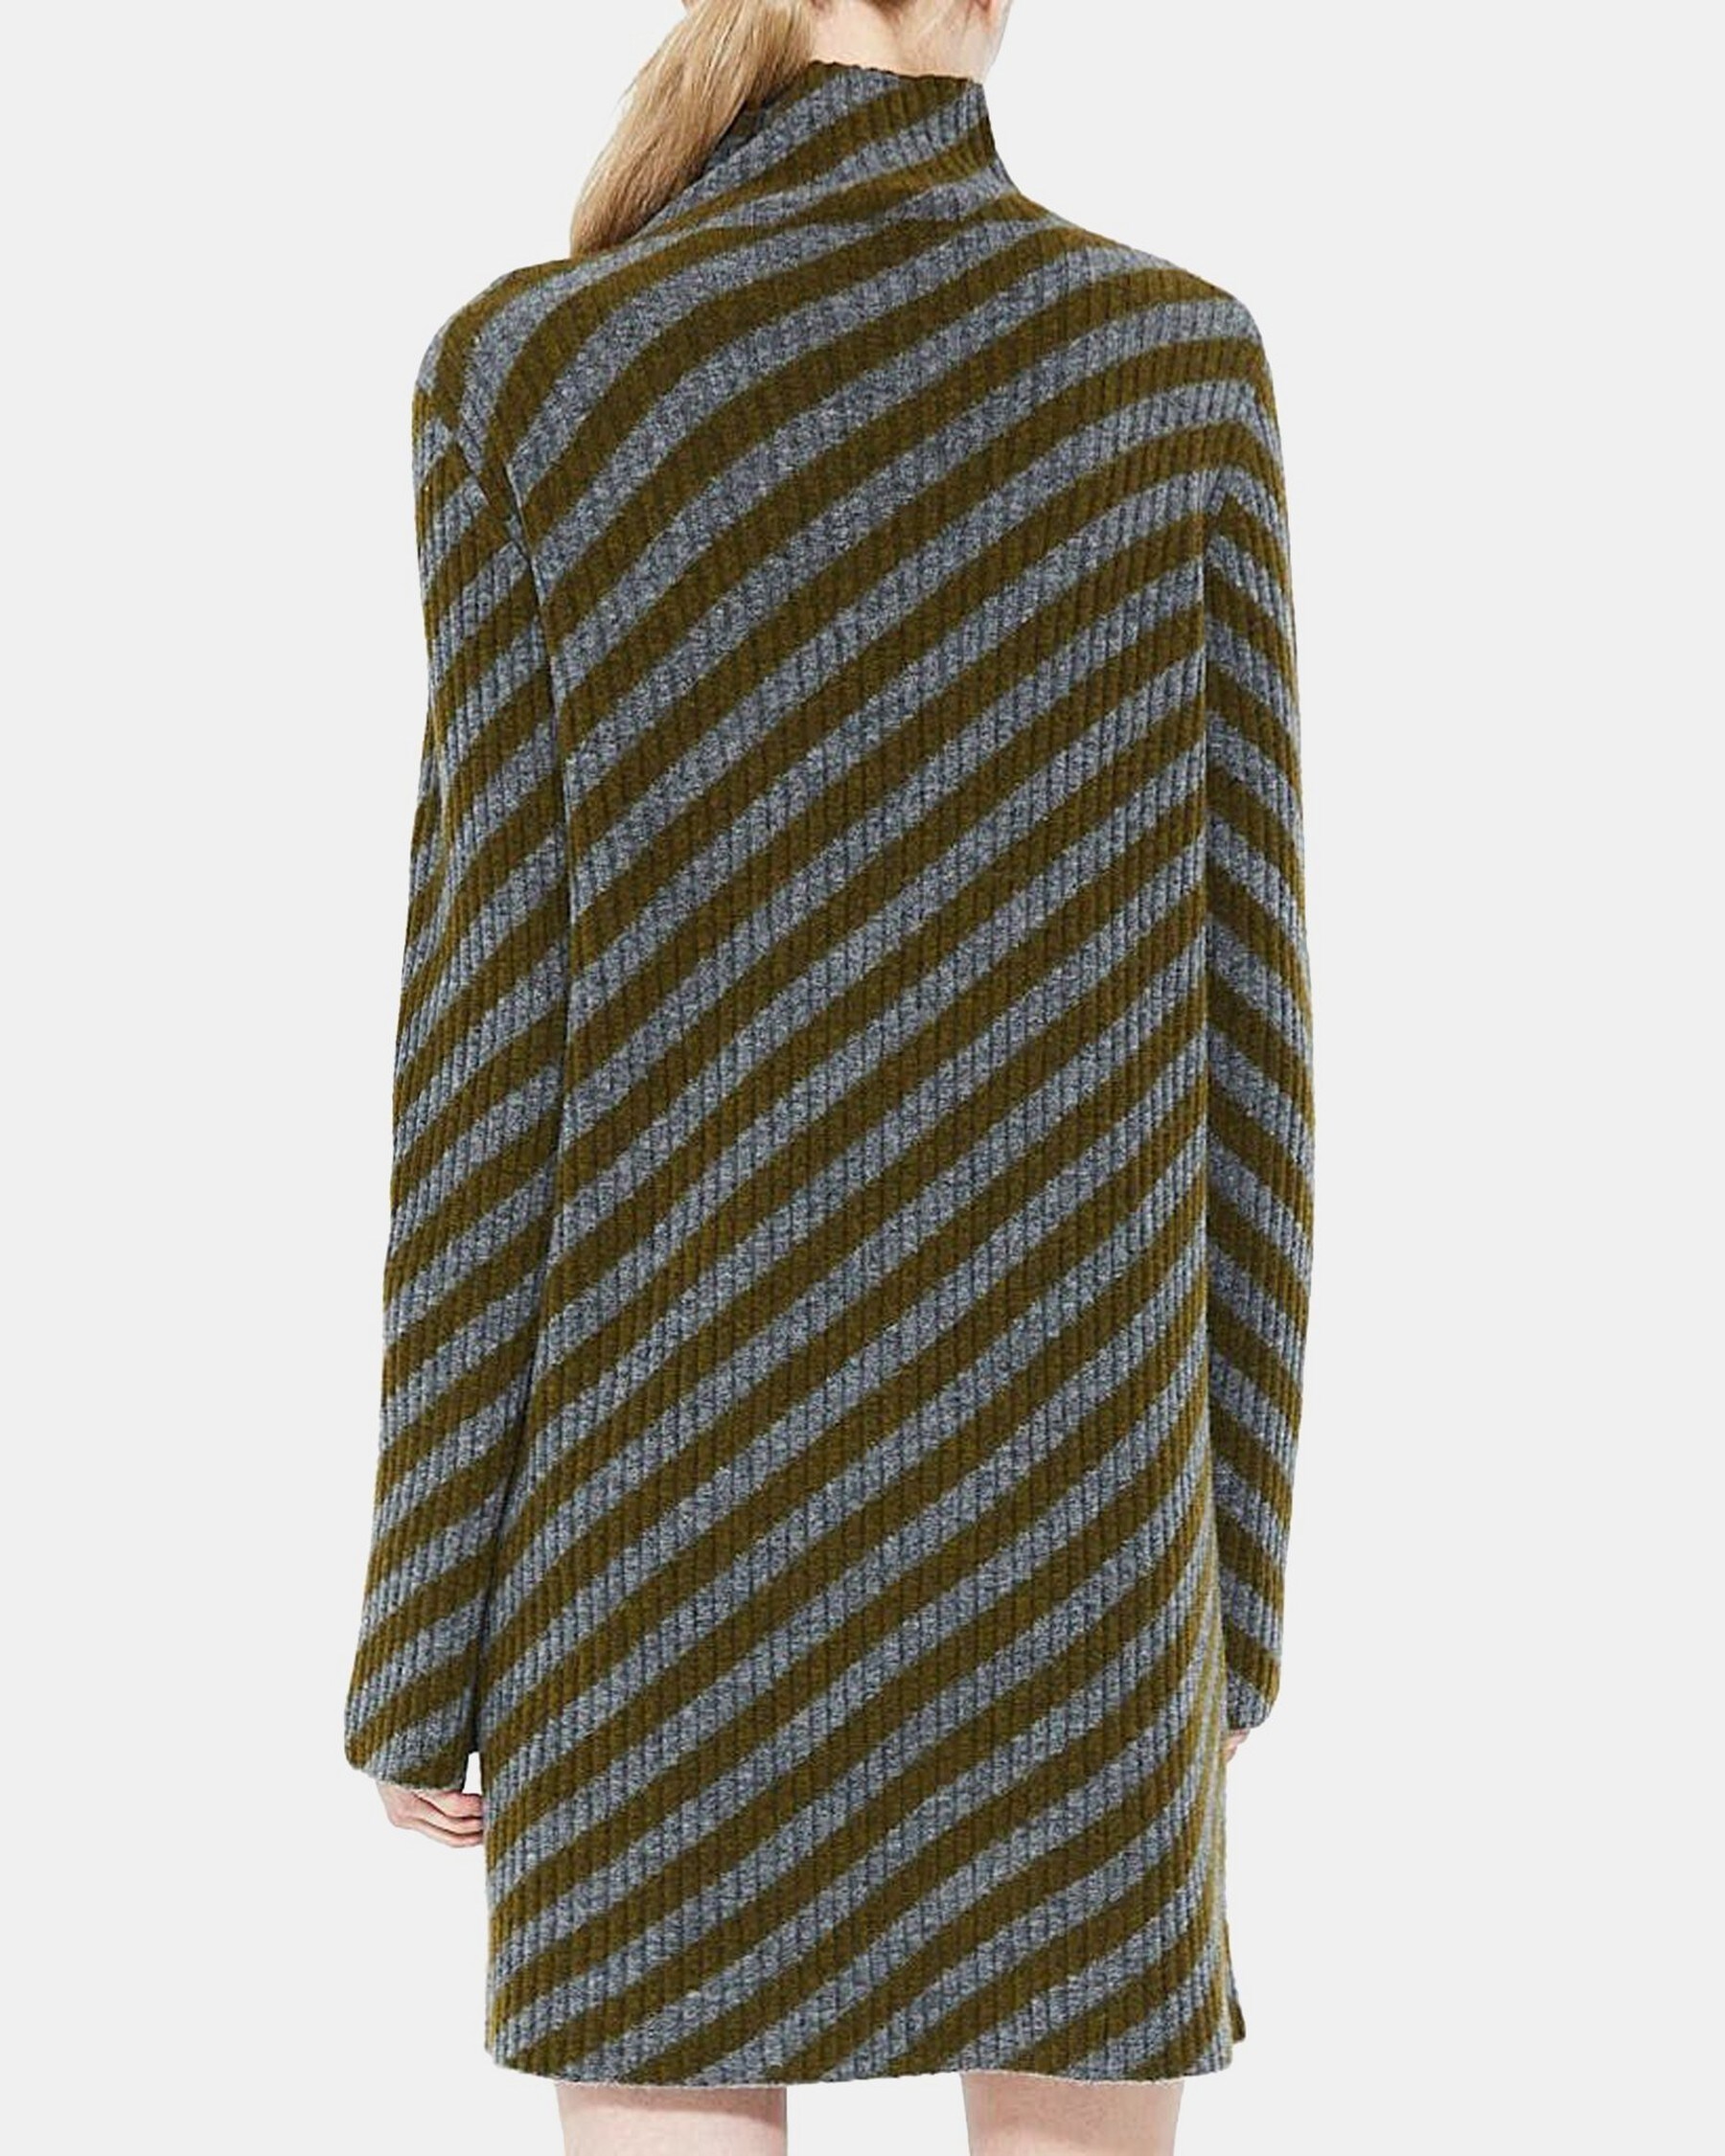 Turtleneck Dress in Striped Wool Blend